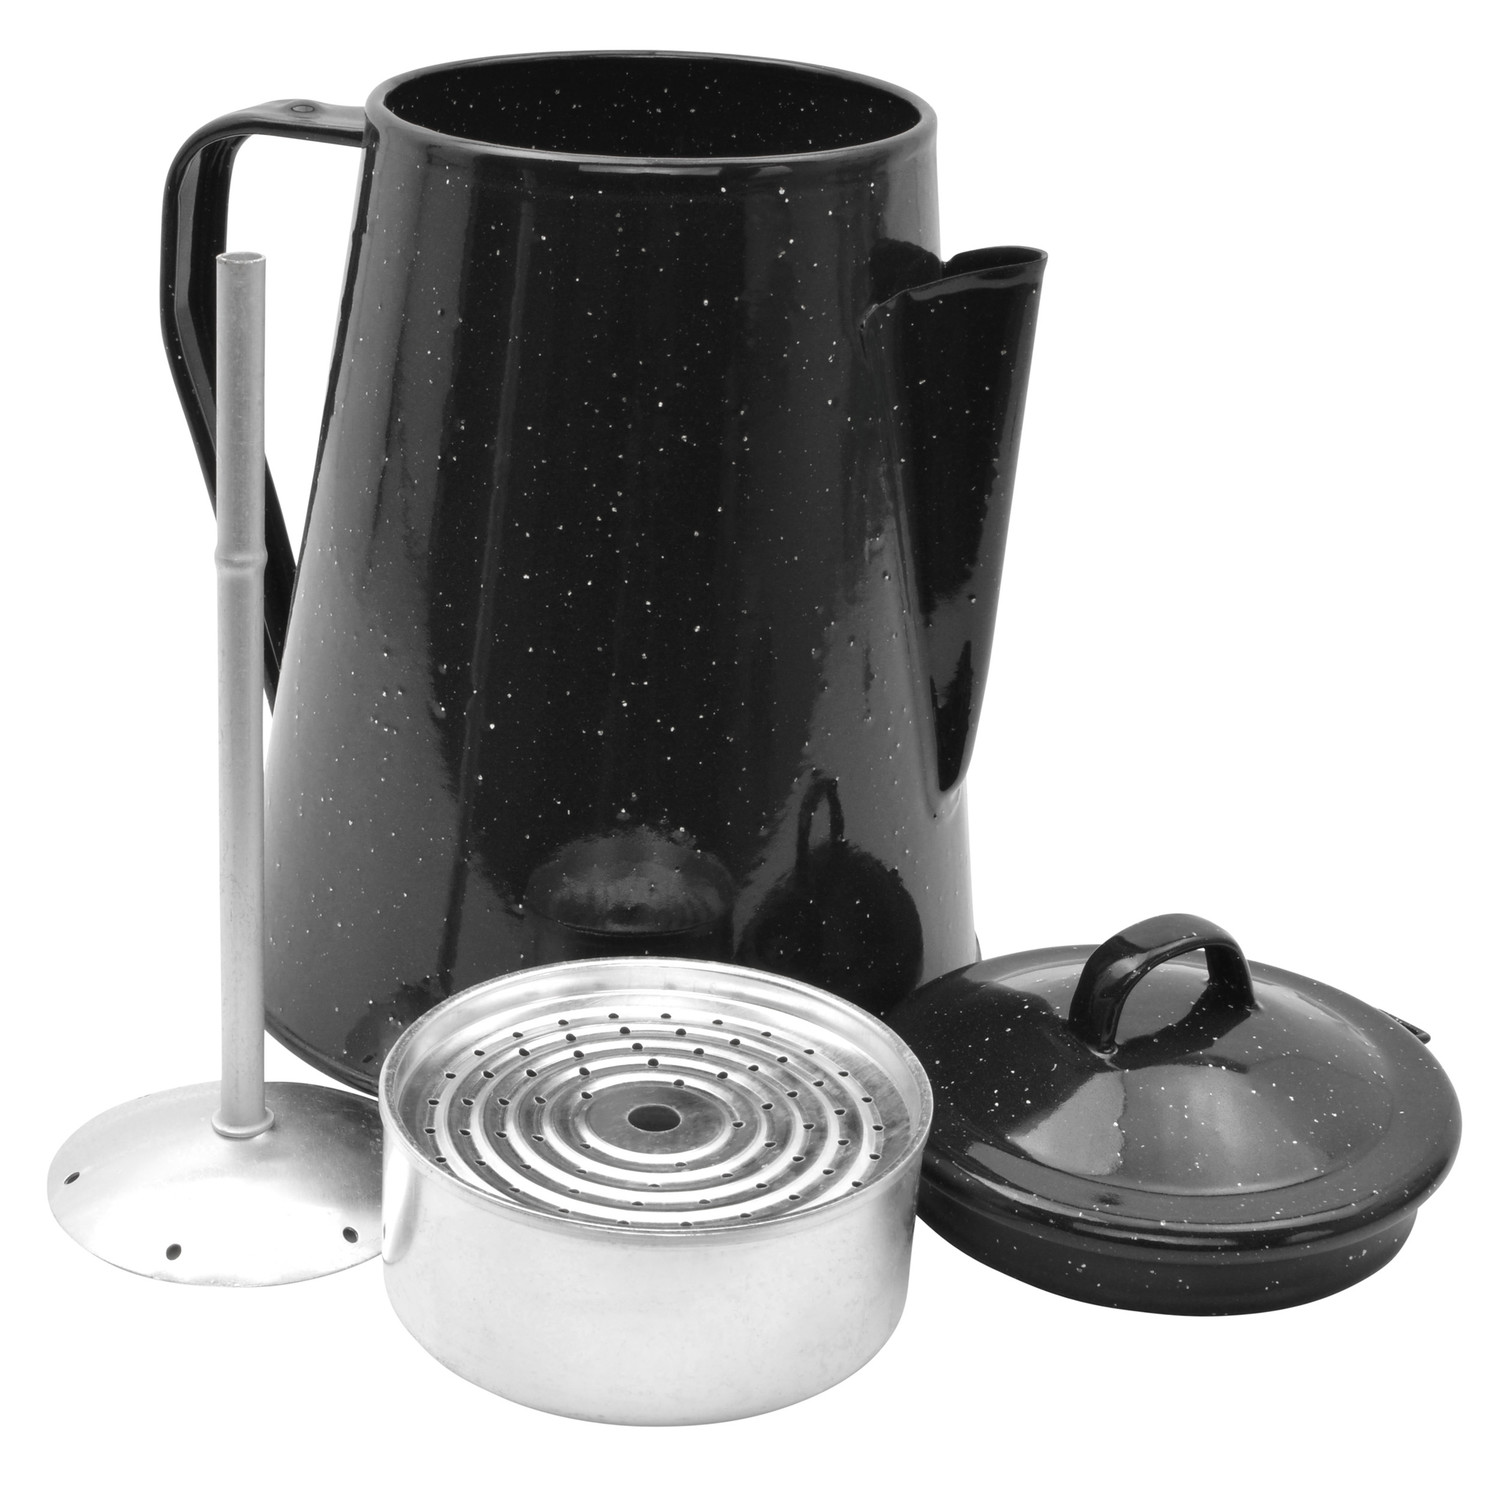 Western Kaffeekanne Emaille in Schwarz mit Perkolator, 2 Liter Fassungsvermögen